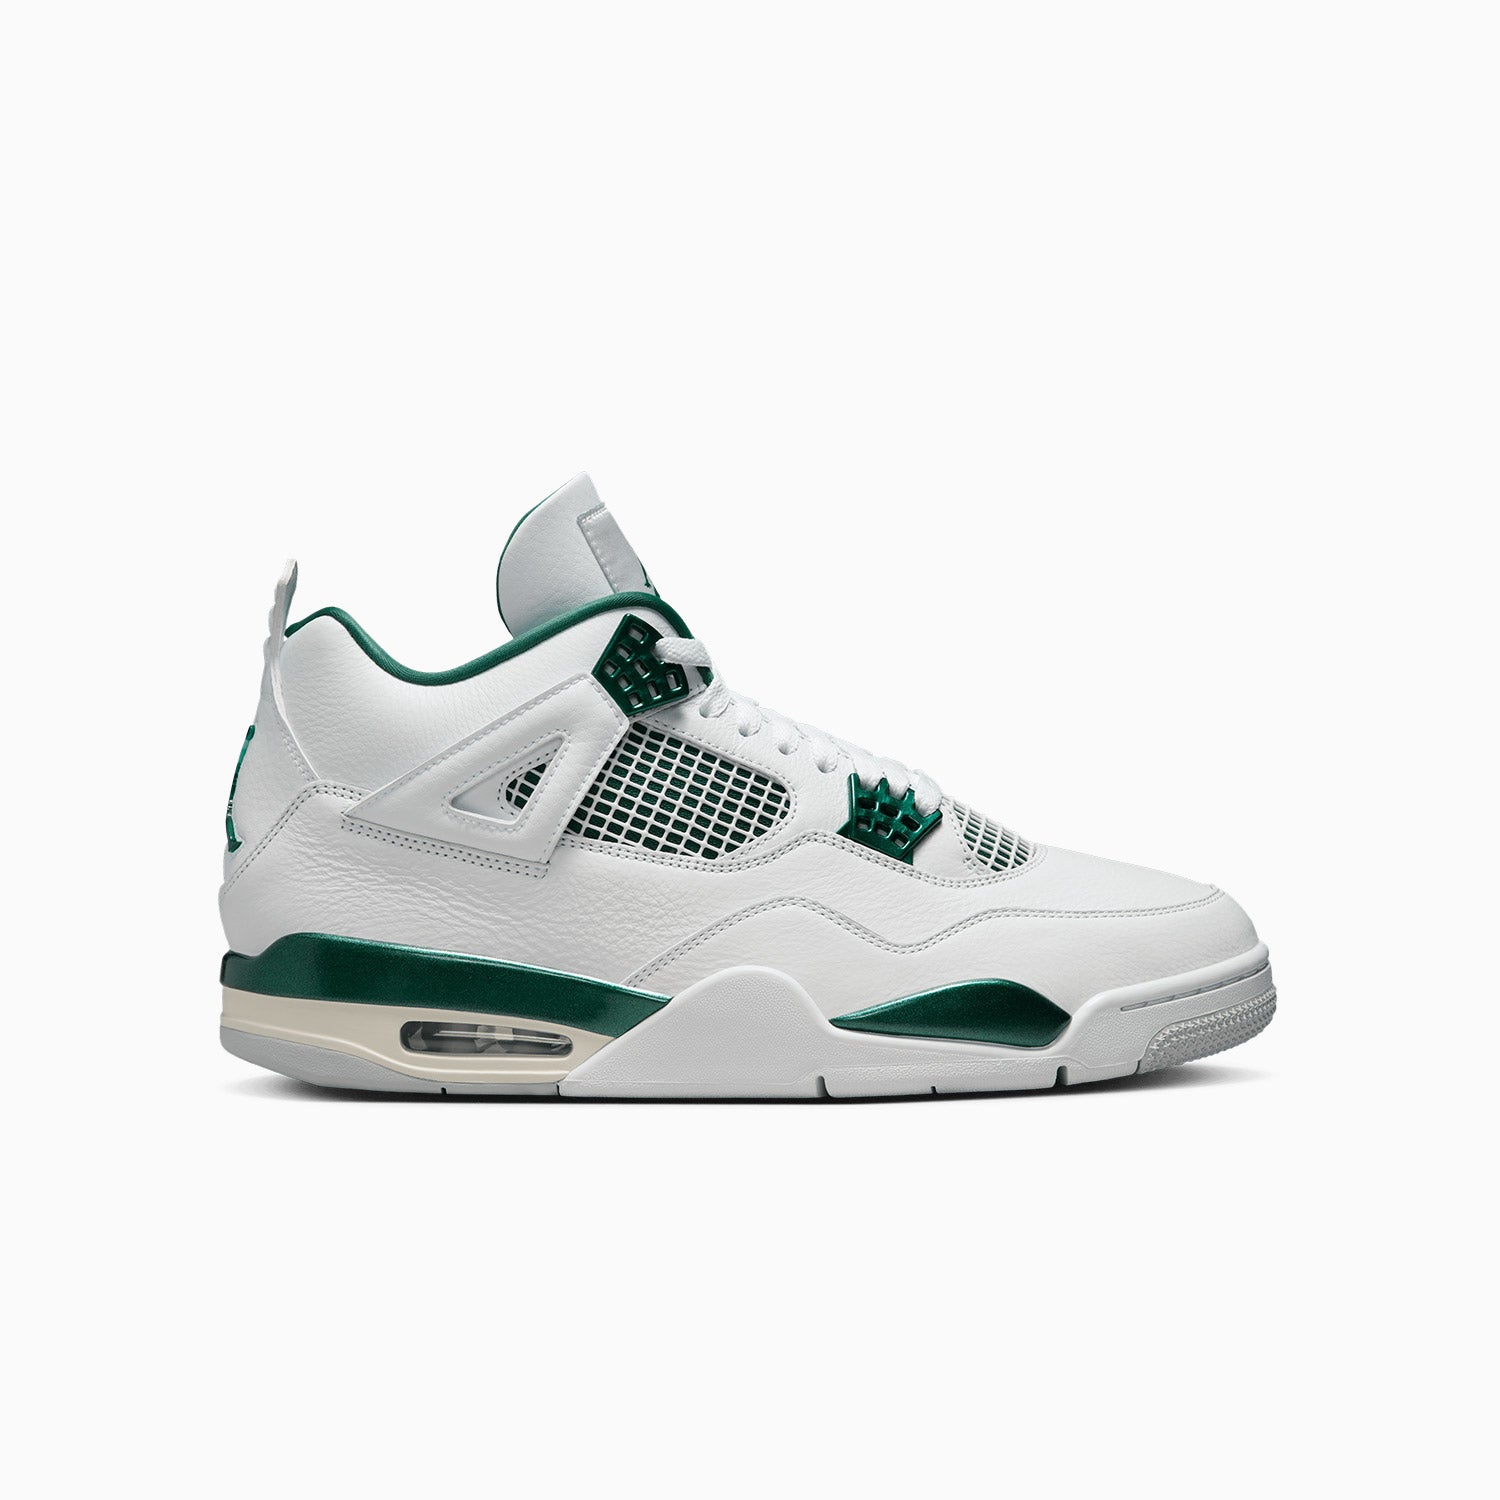 mens-air-jordan-4-retro-oxidized-green-shoes-fq8138-103